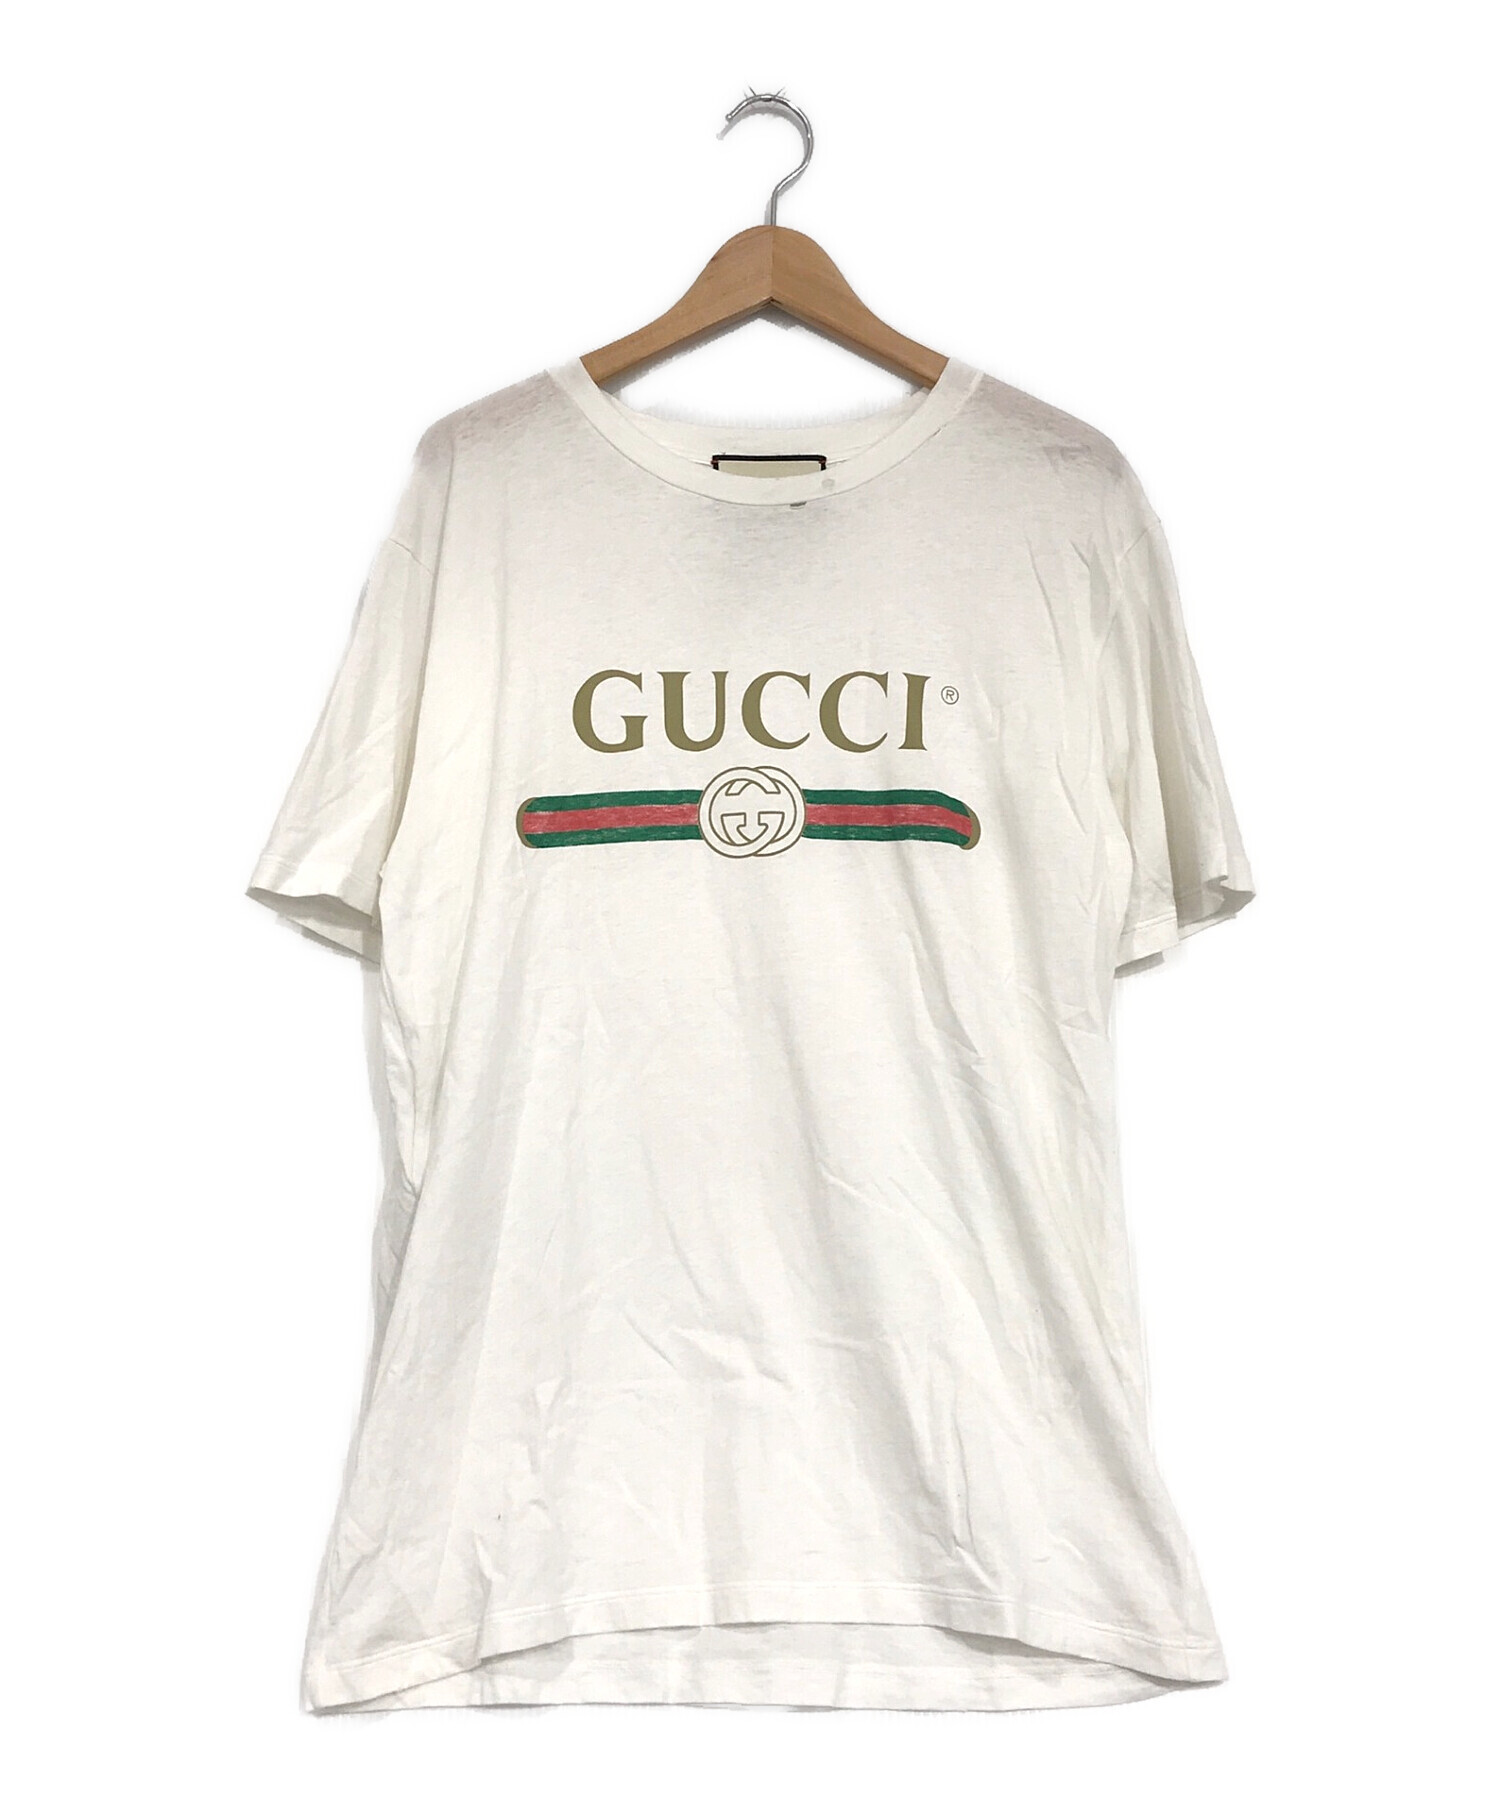 GUCCI (グッチ) ダメージ加工オーバーサイズコットン Tシャツ ホワイト サイズ:SIZE S